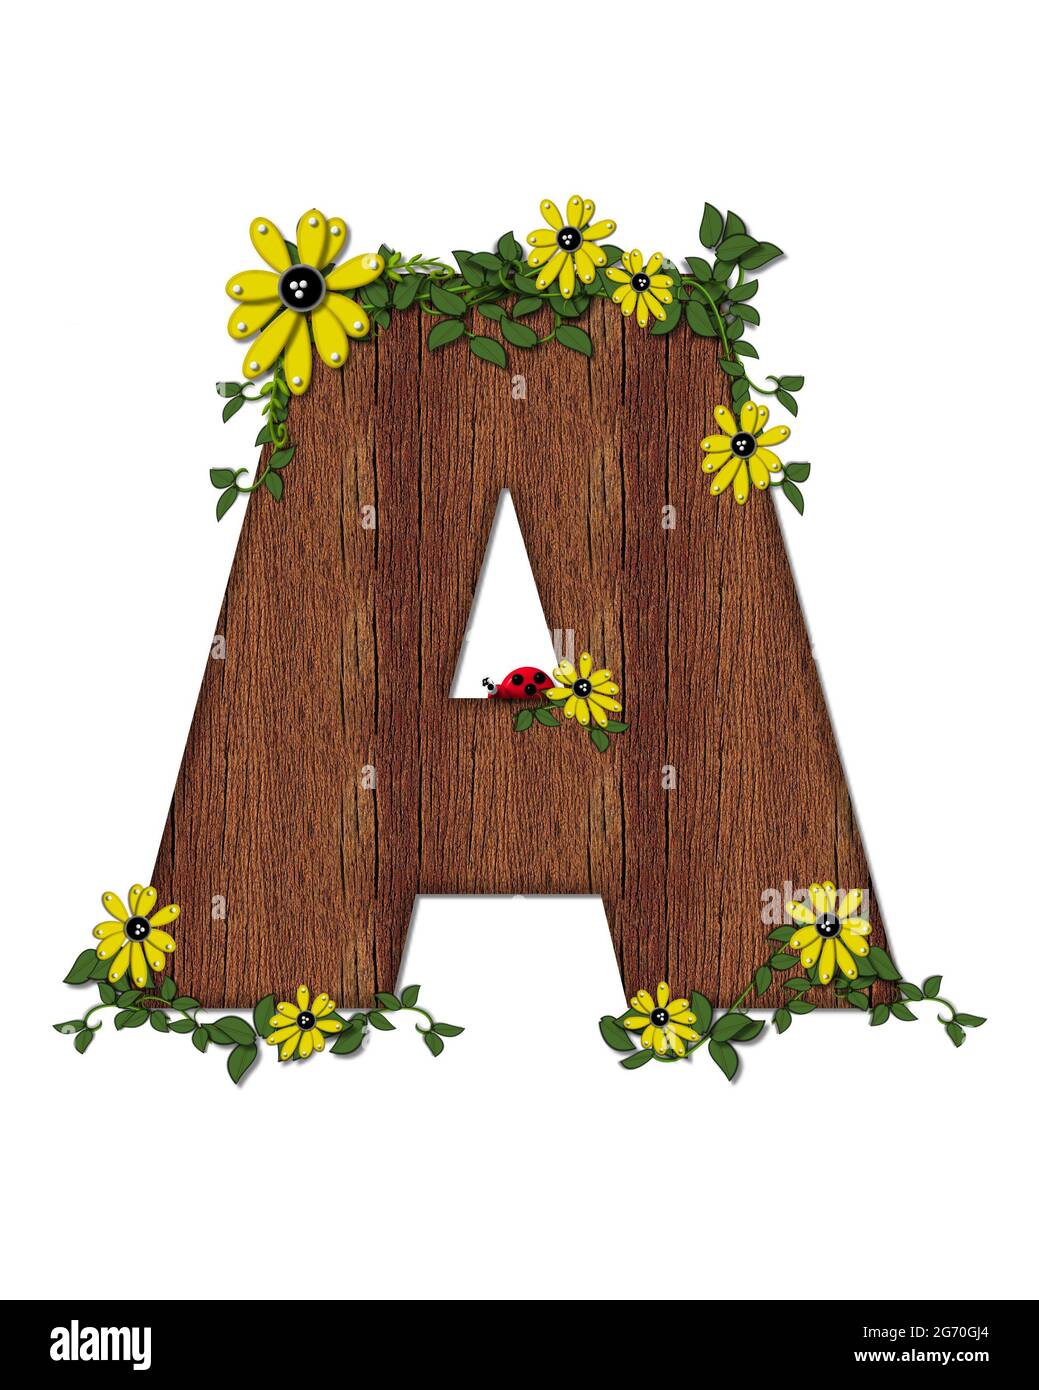 Der Buchstabe A im Alphabet-Set 'Marienkäfer und Sonnenblume' ist mit Holztextur gefüllt. Marienkäfer, Sonnenblumen und Reben schmücken Brief. Stockfoto